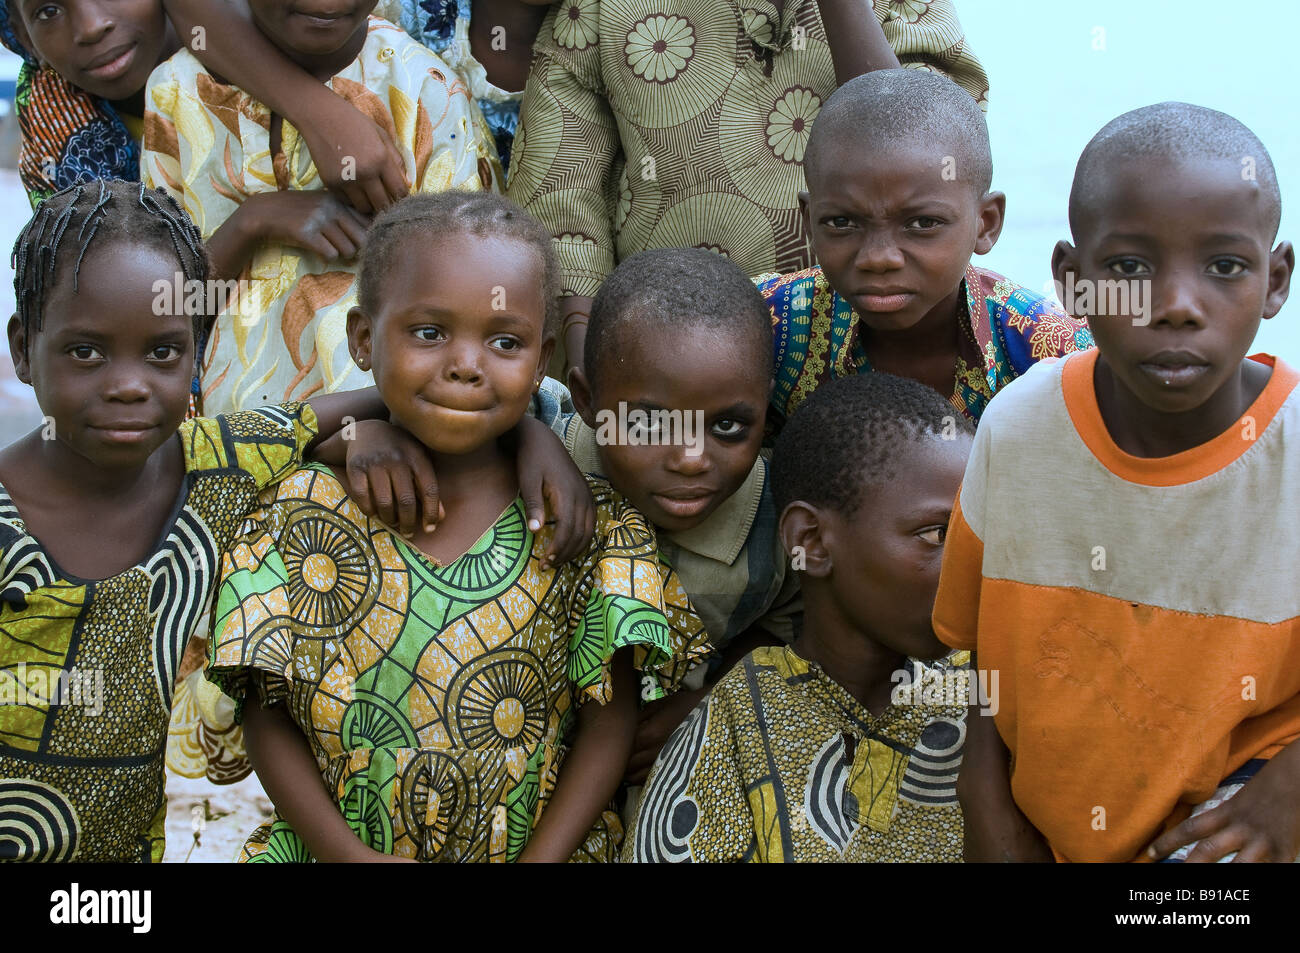 children in village near Lagos, Nigeria Stock Photo